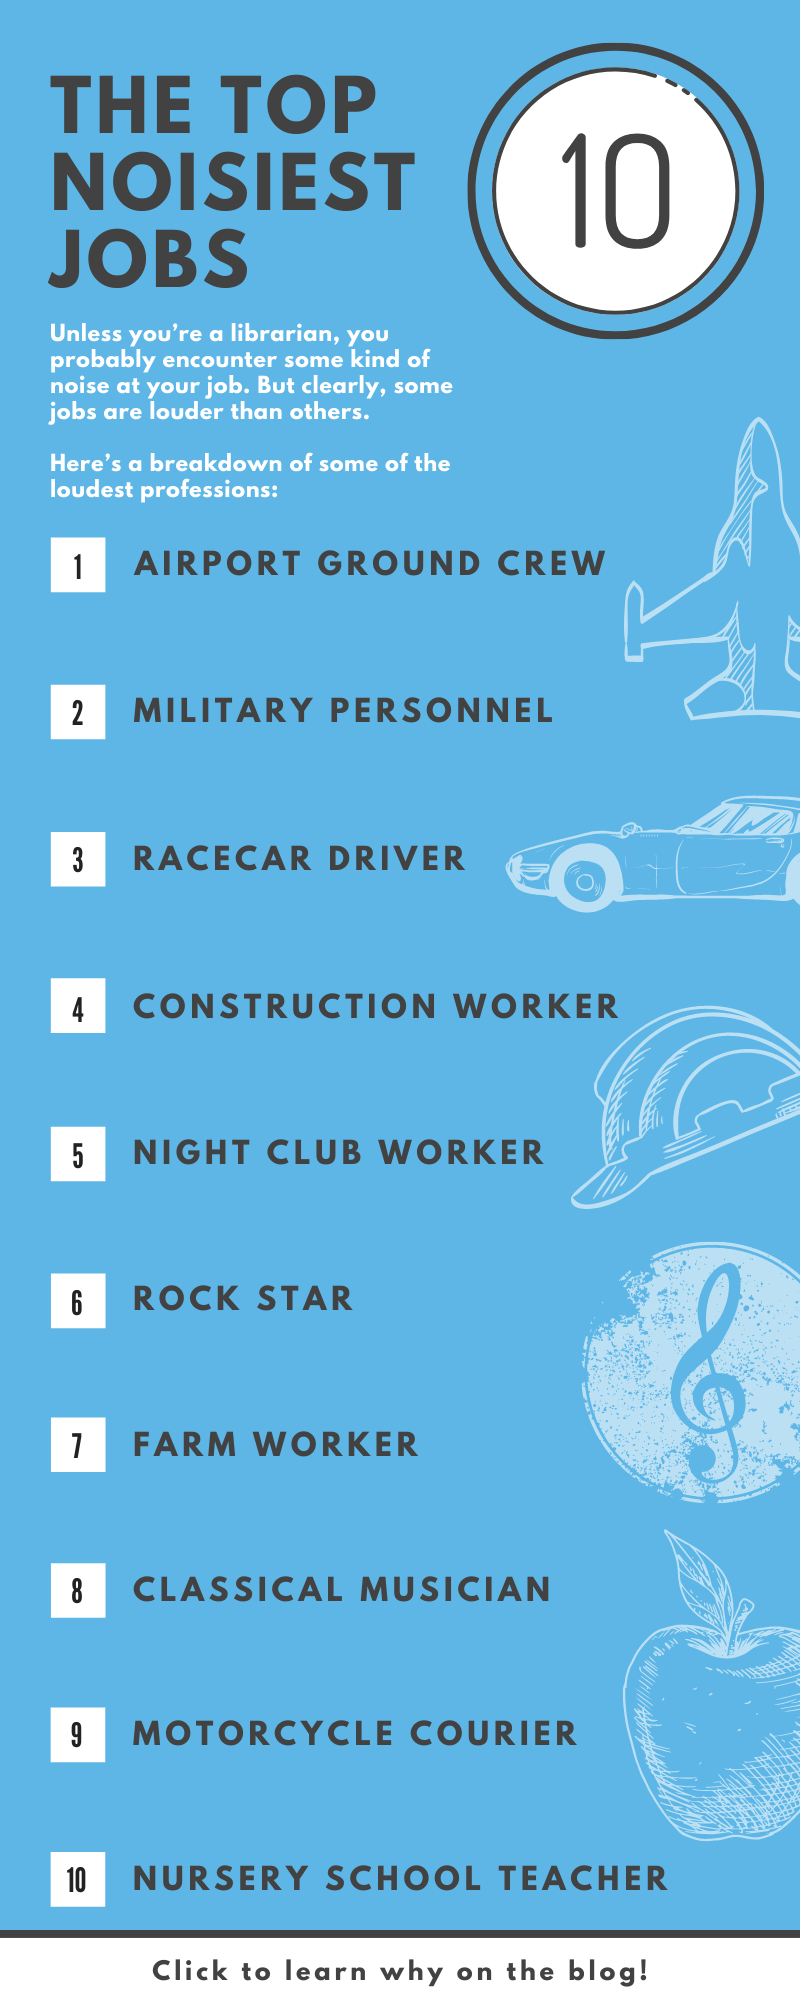 Top 10 noisiest jobs